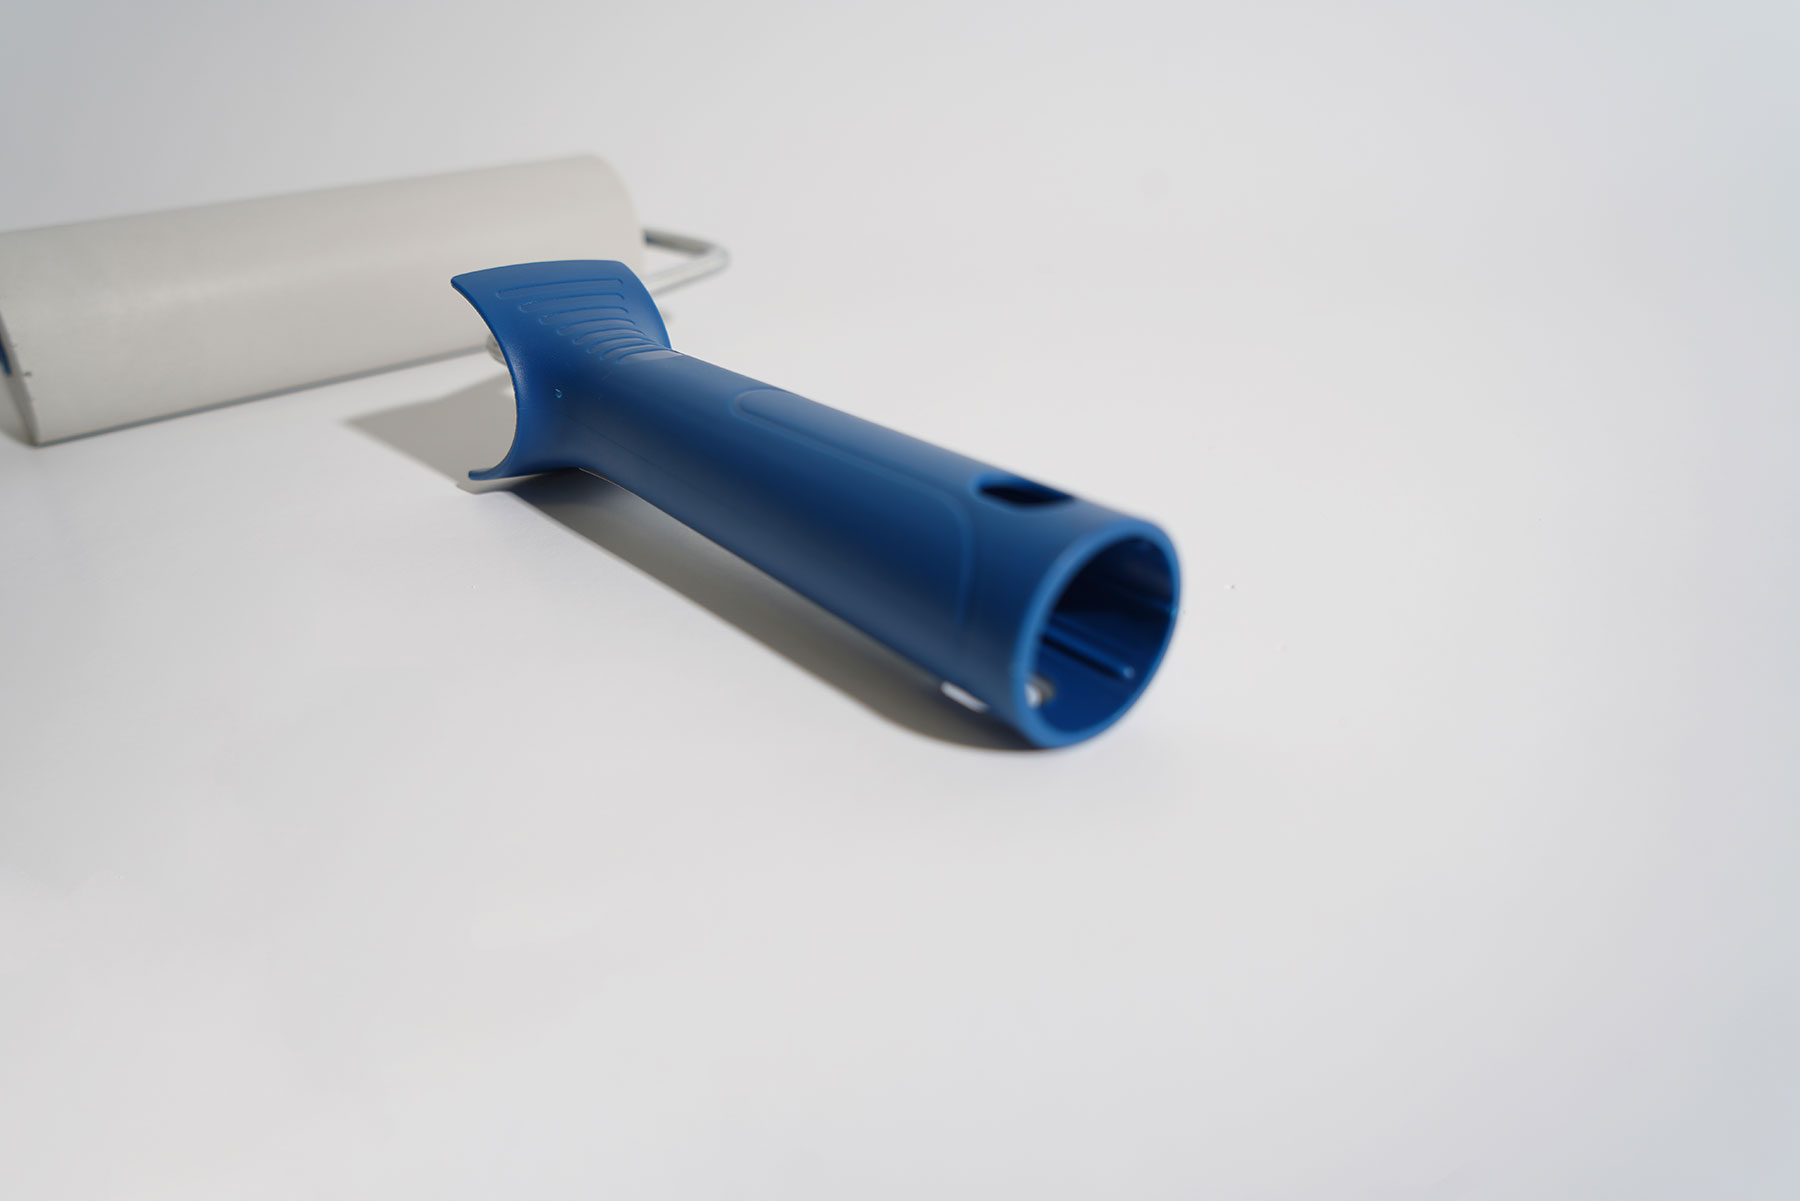             Rodillo de presión con rodillo de espuma de PU de 15 cm y mango de plástico
        